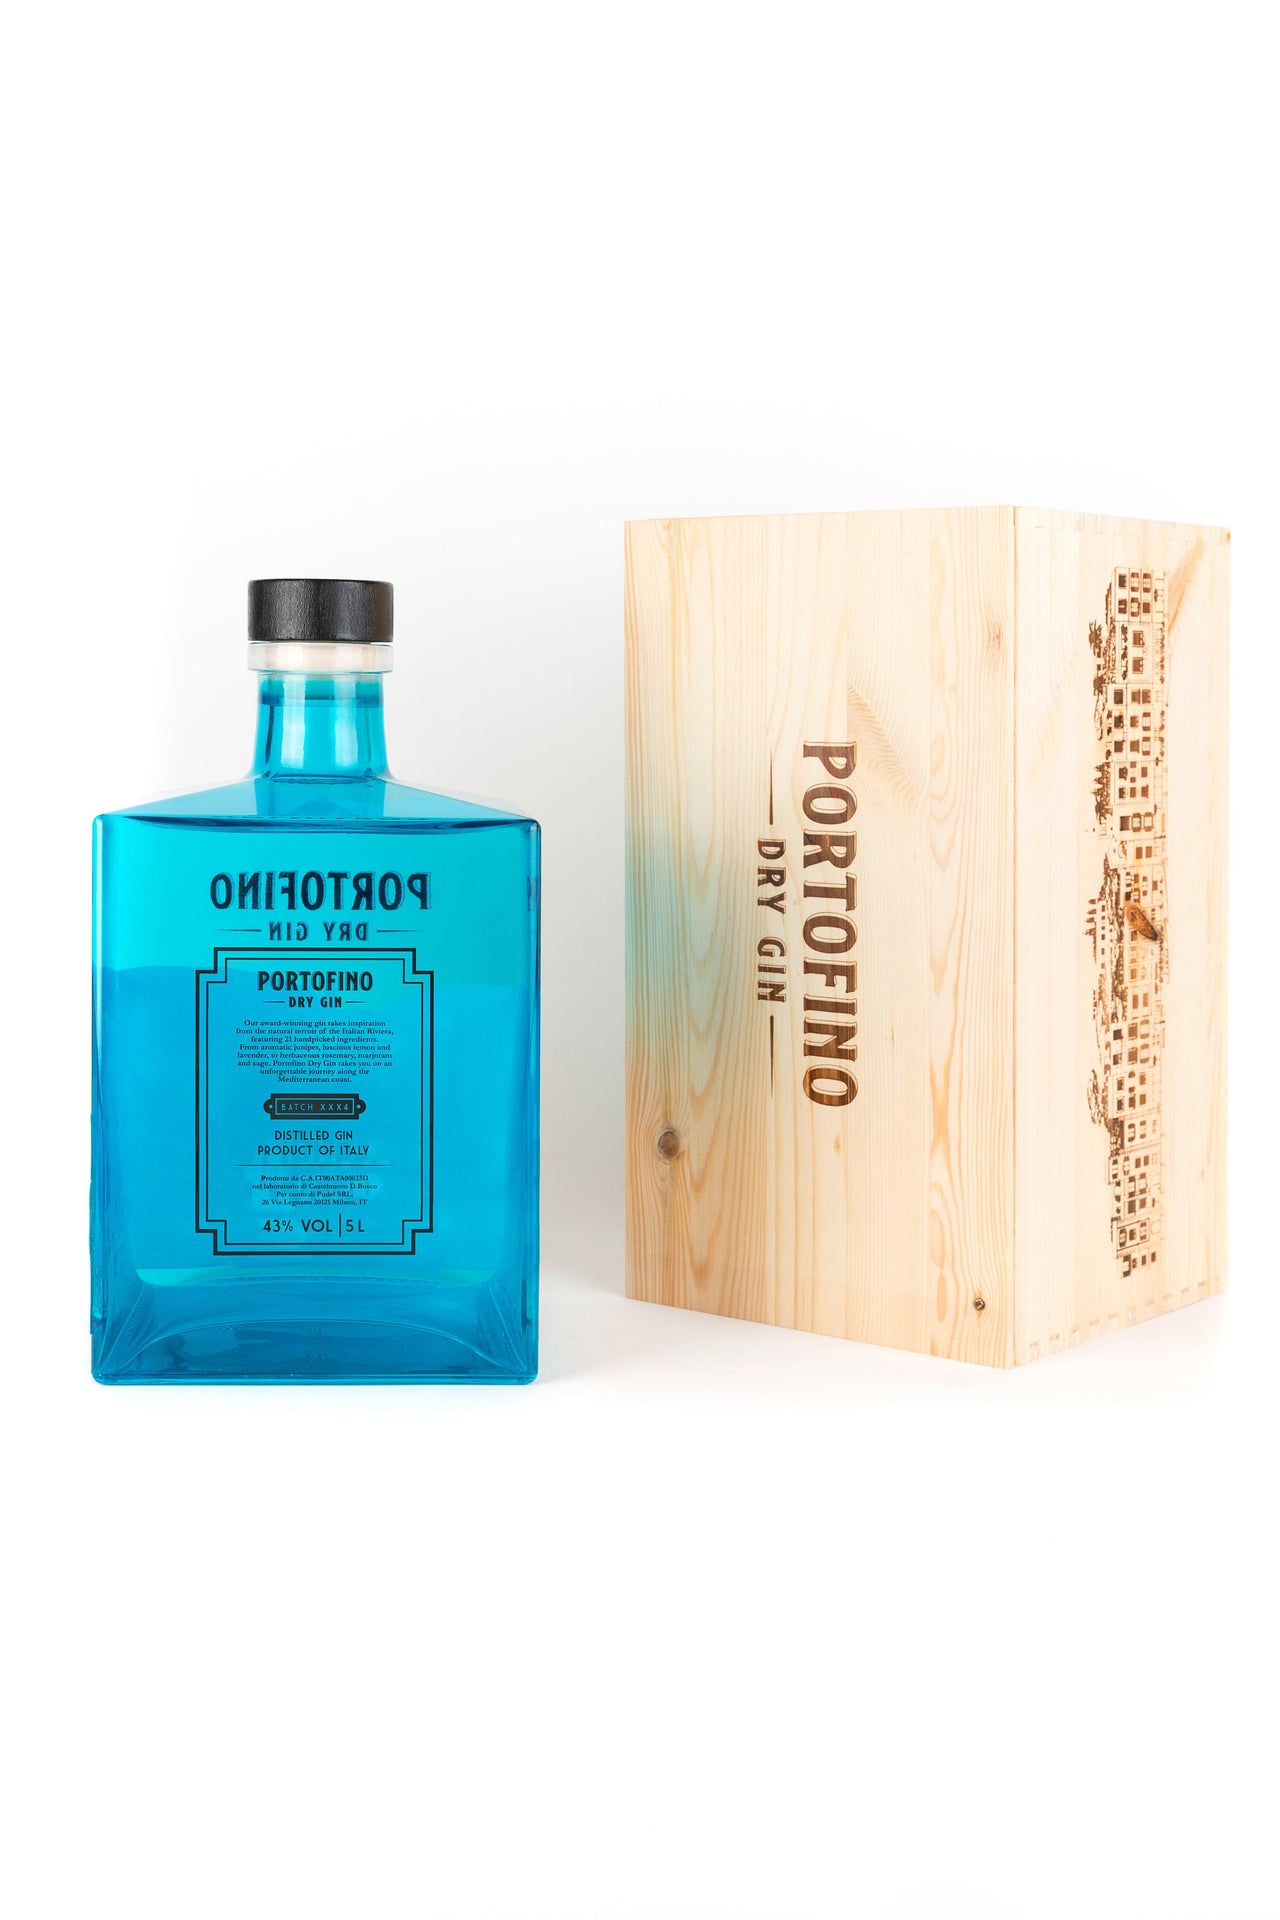 PORTOFINO DRY GIN 5LT - Portofino Dry Gin